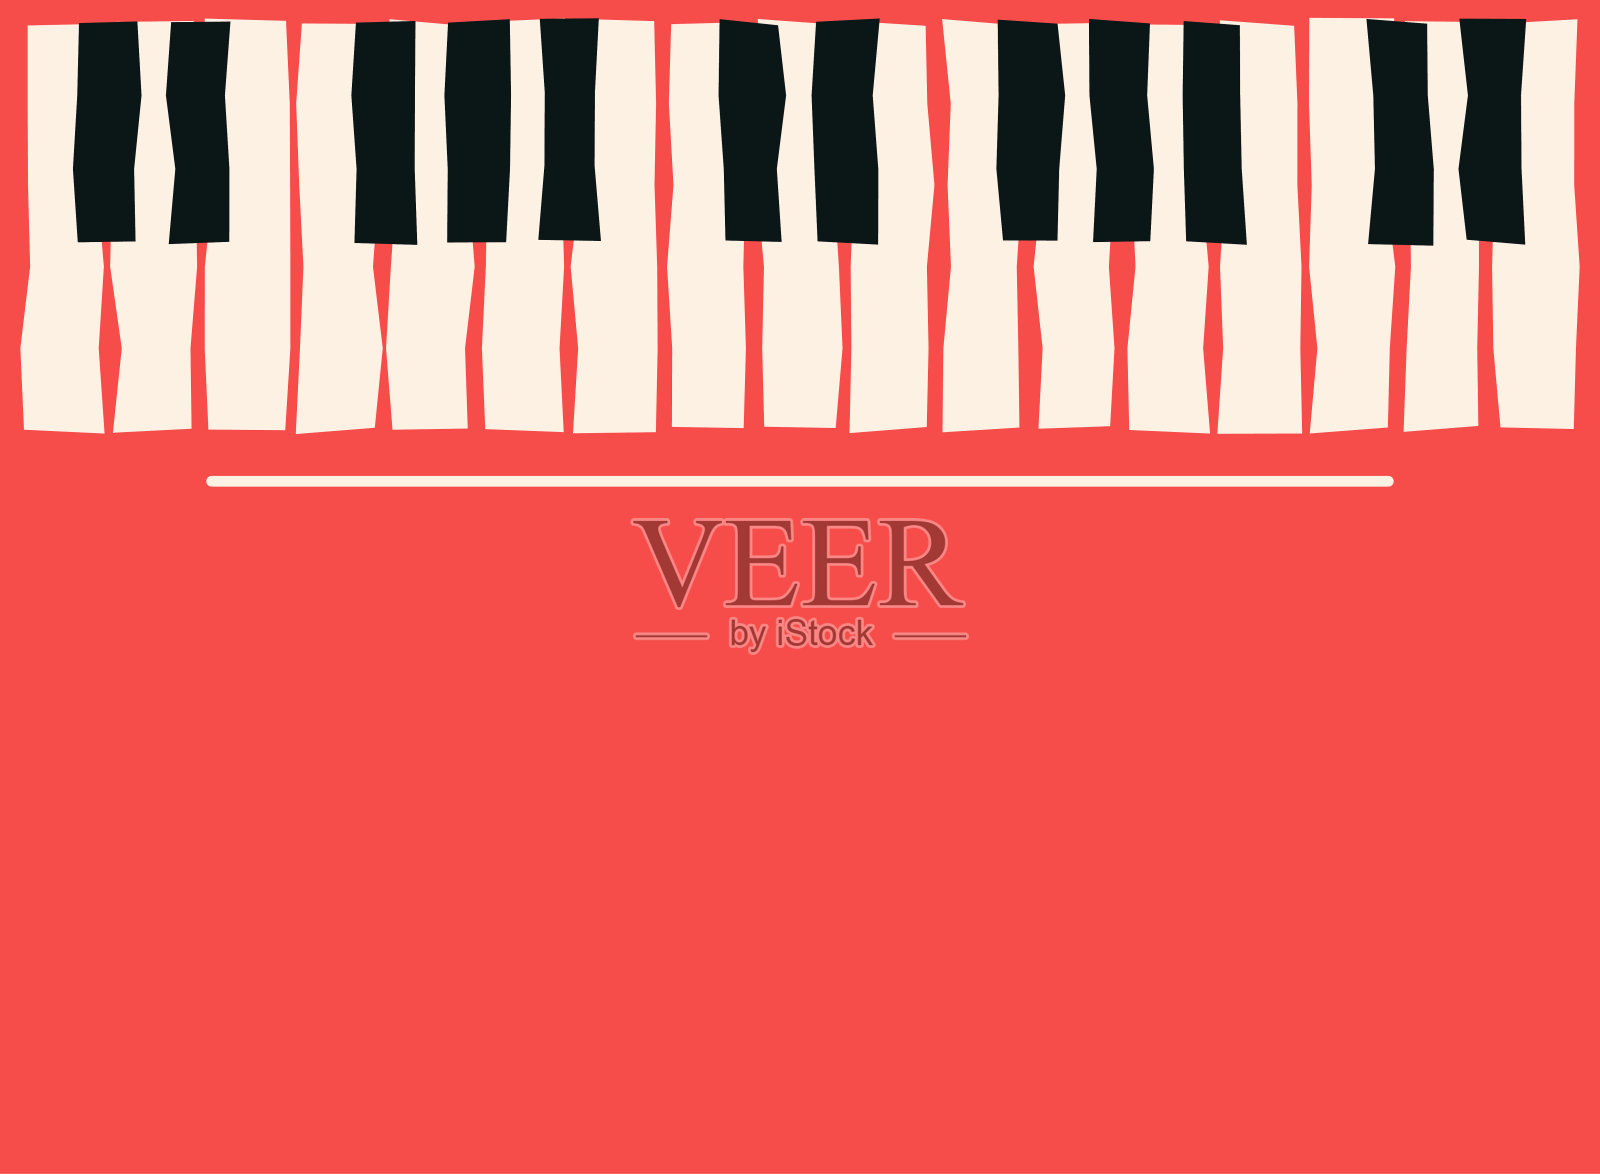 钢琴键。音乐海报模板。爵士乐和蓝调音乐音乐会的背景设计元素图片